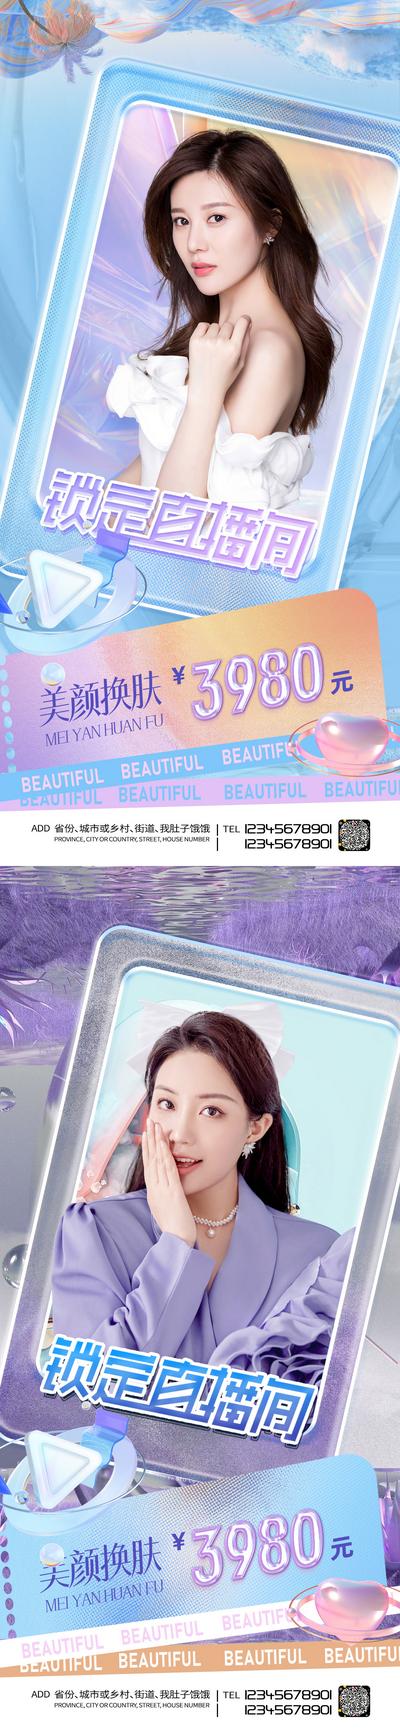 南门网 广告 海报 医美 人物 直播 活动 促销 美颜 换肤